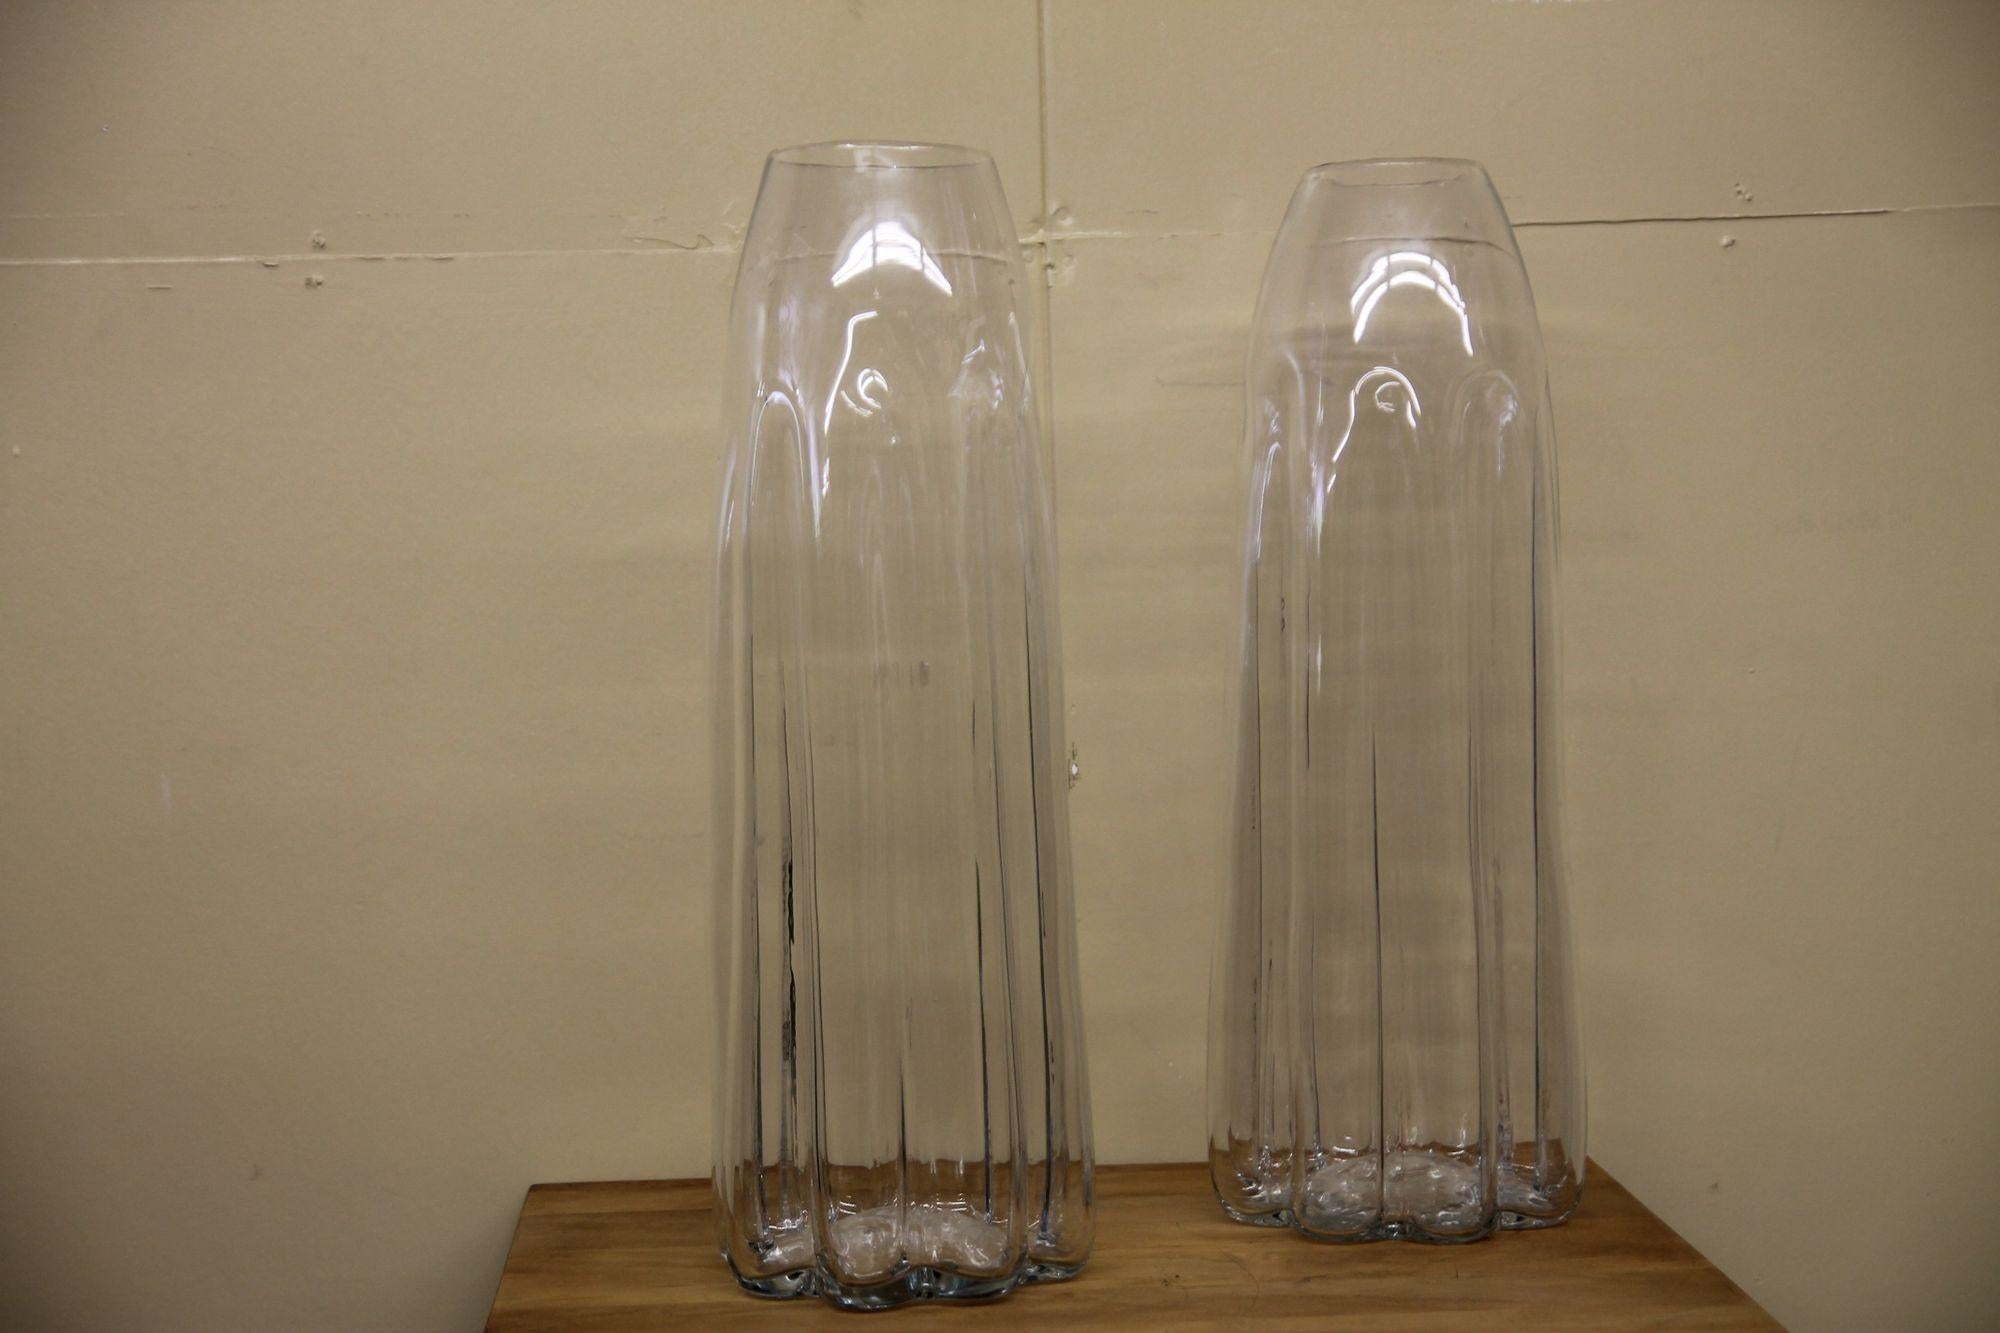 Nous avons le plaisir de vous proposer cette paire de grands vases soufflés à la main. L'ouverture supérieure est légèrement différente, mais il faut s'attendre à ce que ce soit le cas pour une pièce fabriquée à la main. Ces vases surdimensionnés